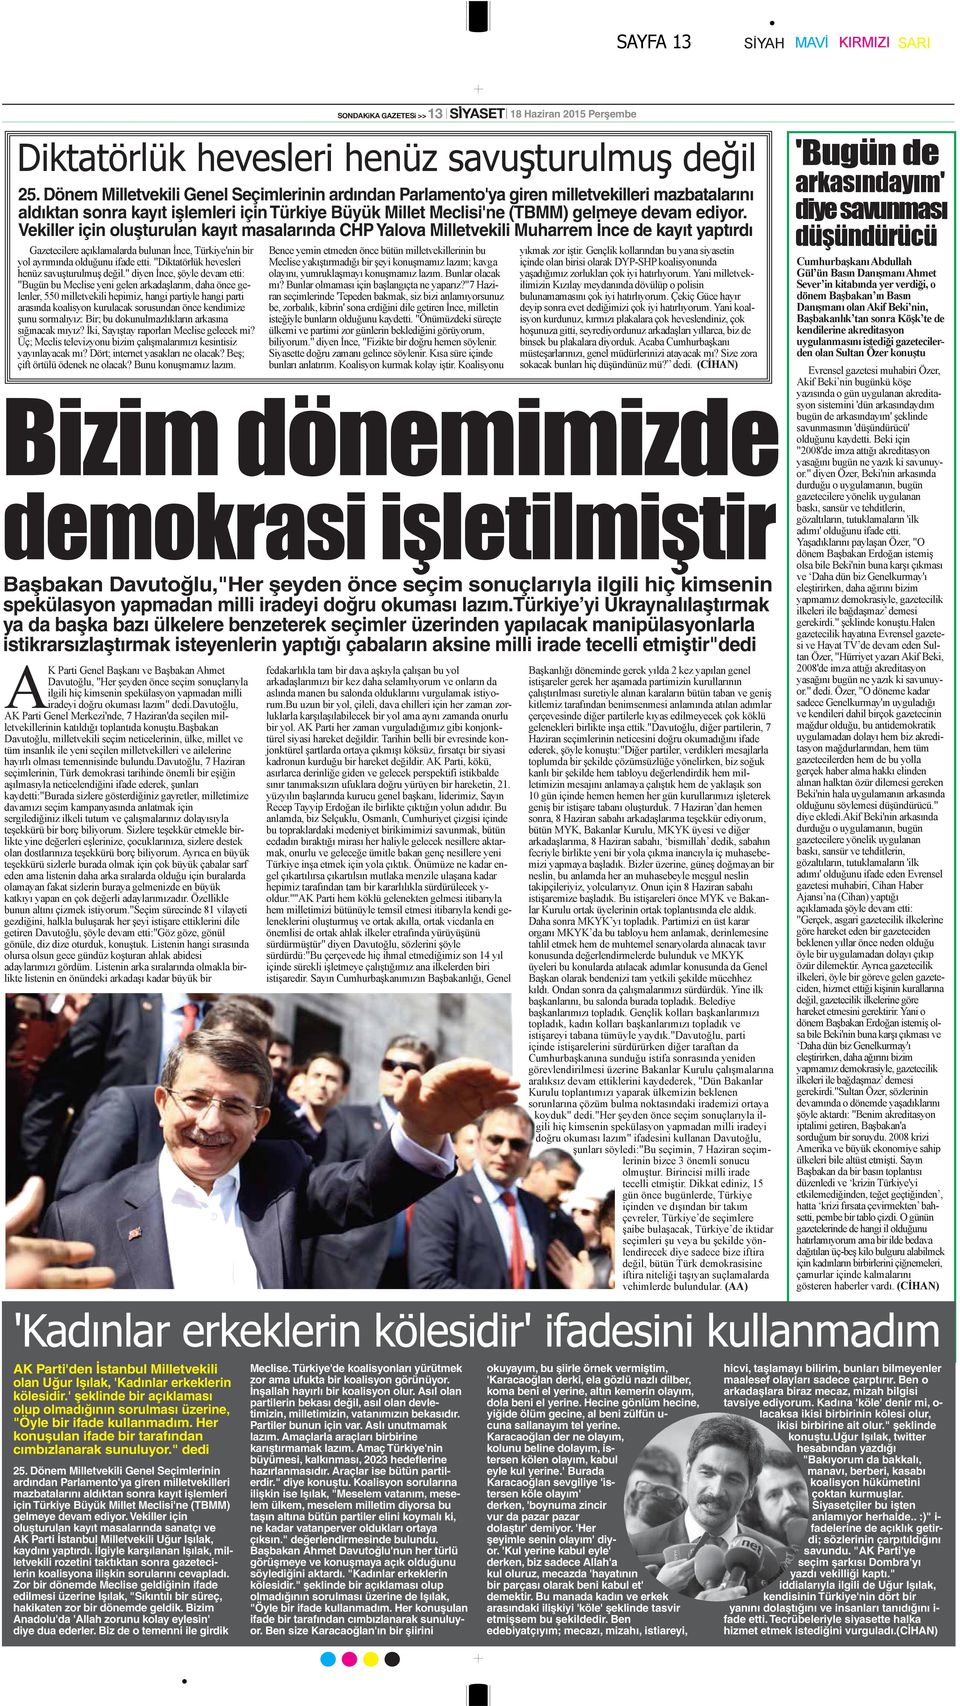 Vekiller için oluşturulan kayıt masalarında CHP Yalova Milletvekili Muharrem İnce de kayıt yaptırdı Başbakan Davutoğlu,"Her şeyden önce seçim sonuçlarıyla ilgili hiç kimsenin spekülasyon yapmadan